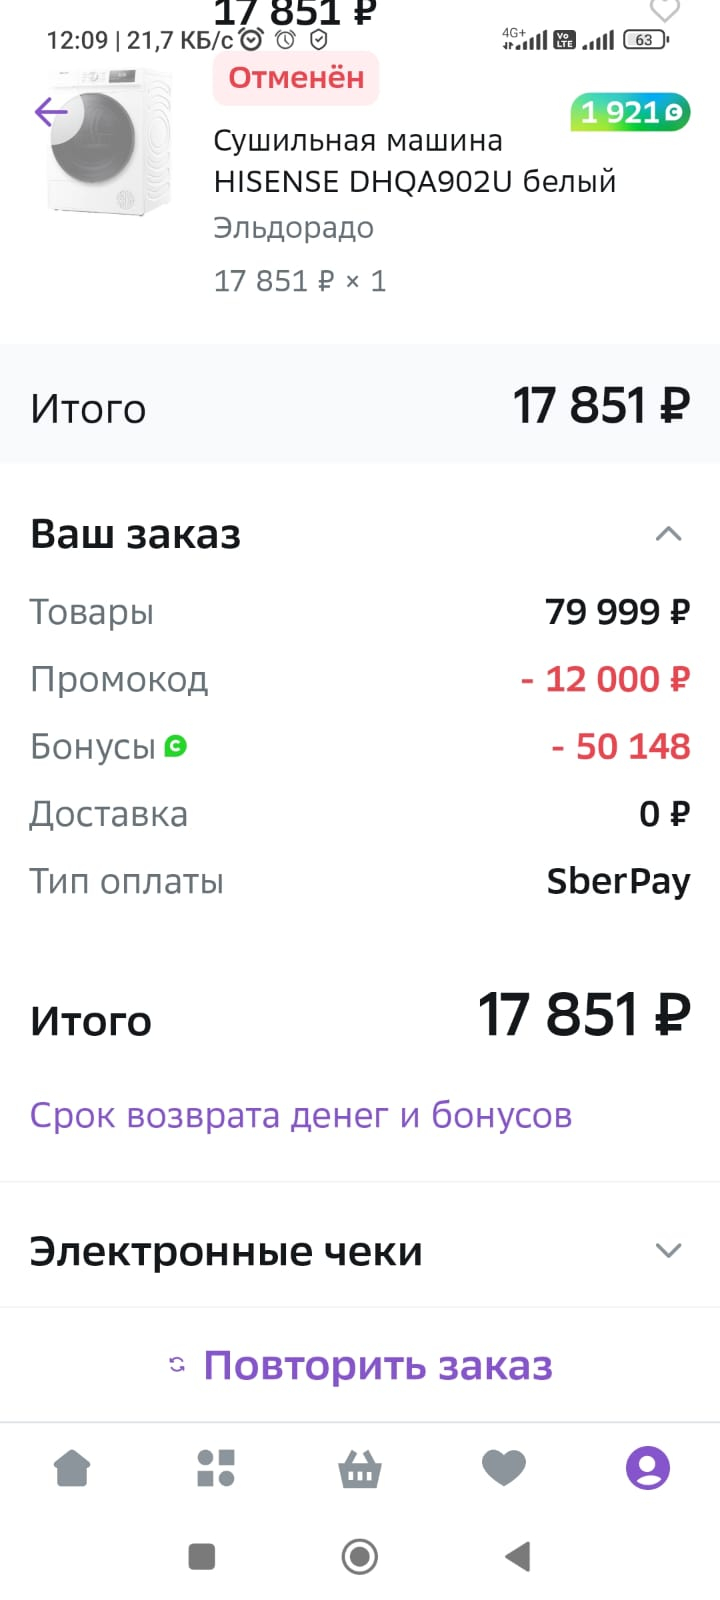 Сбербанк России - Несостоятельность в решении проблем клиентов